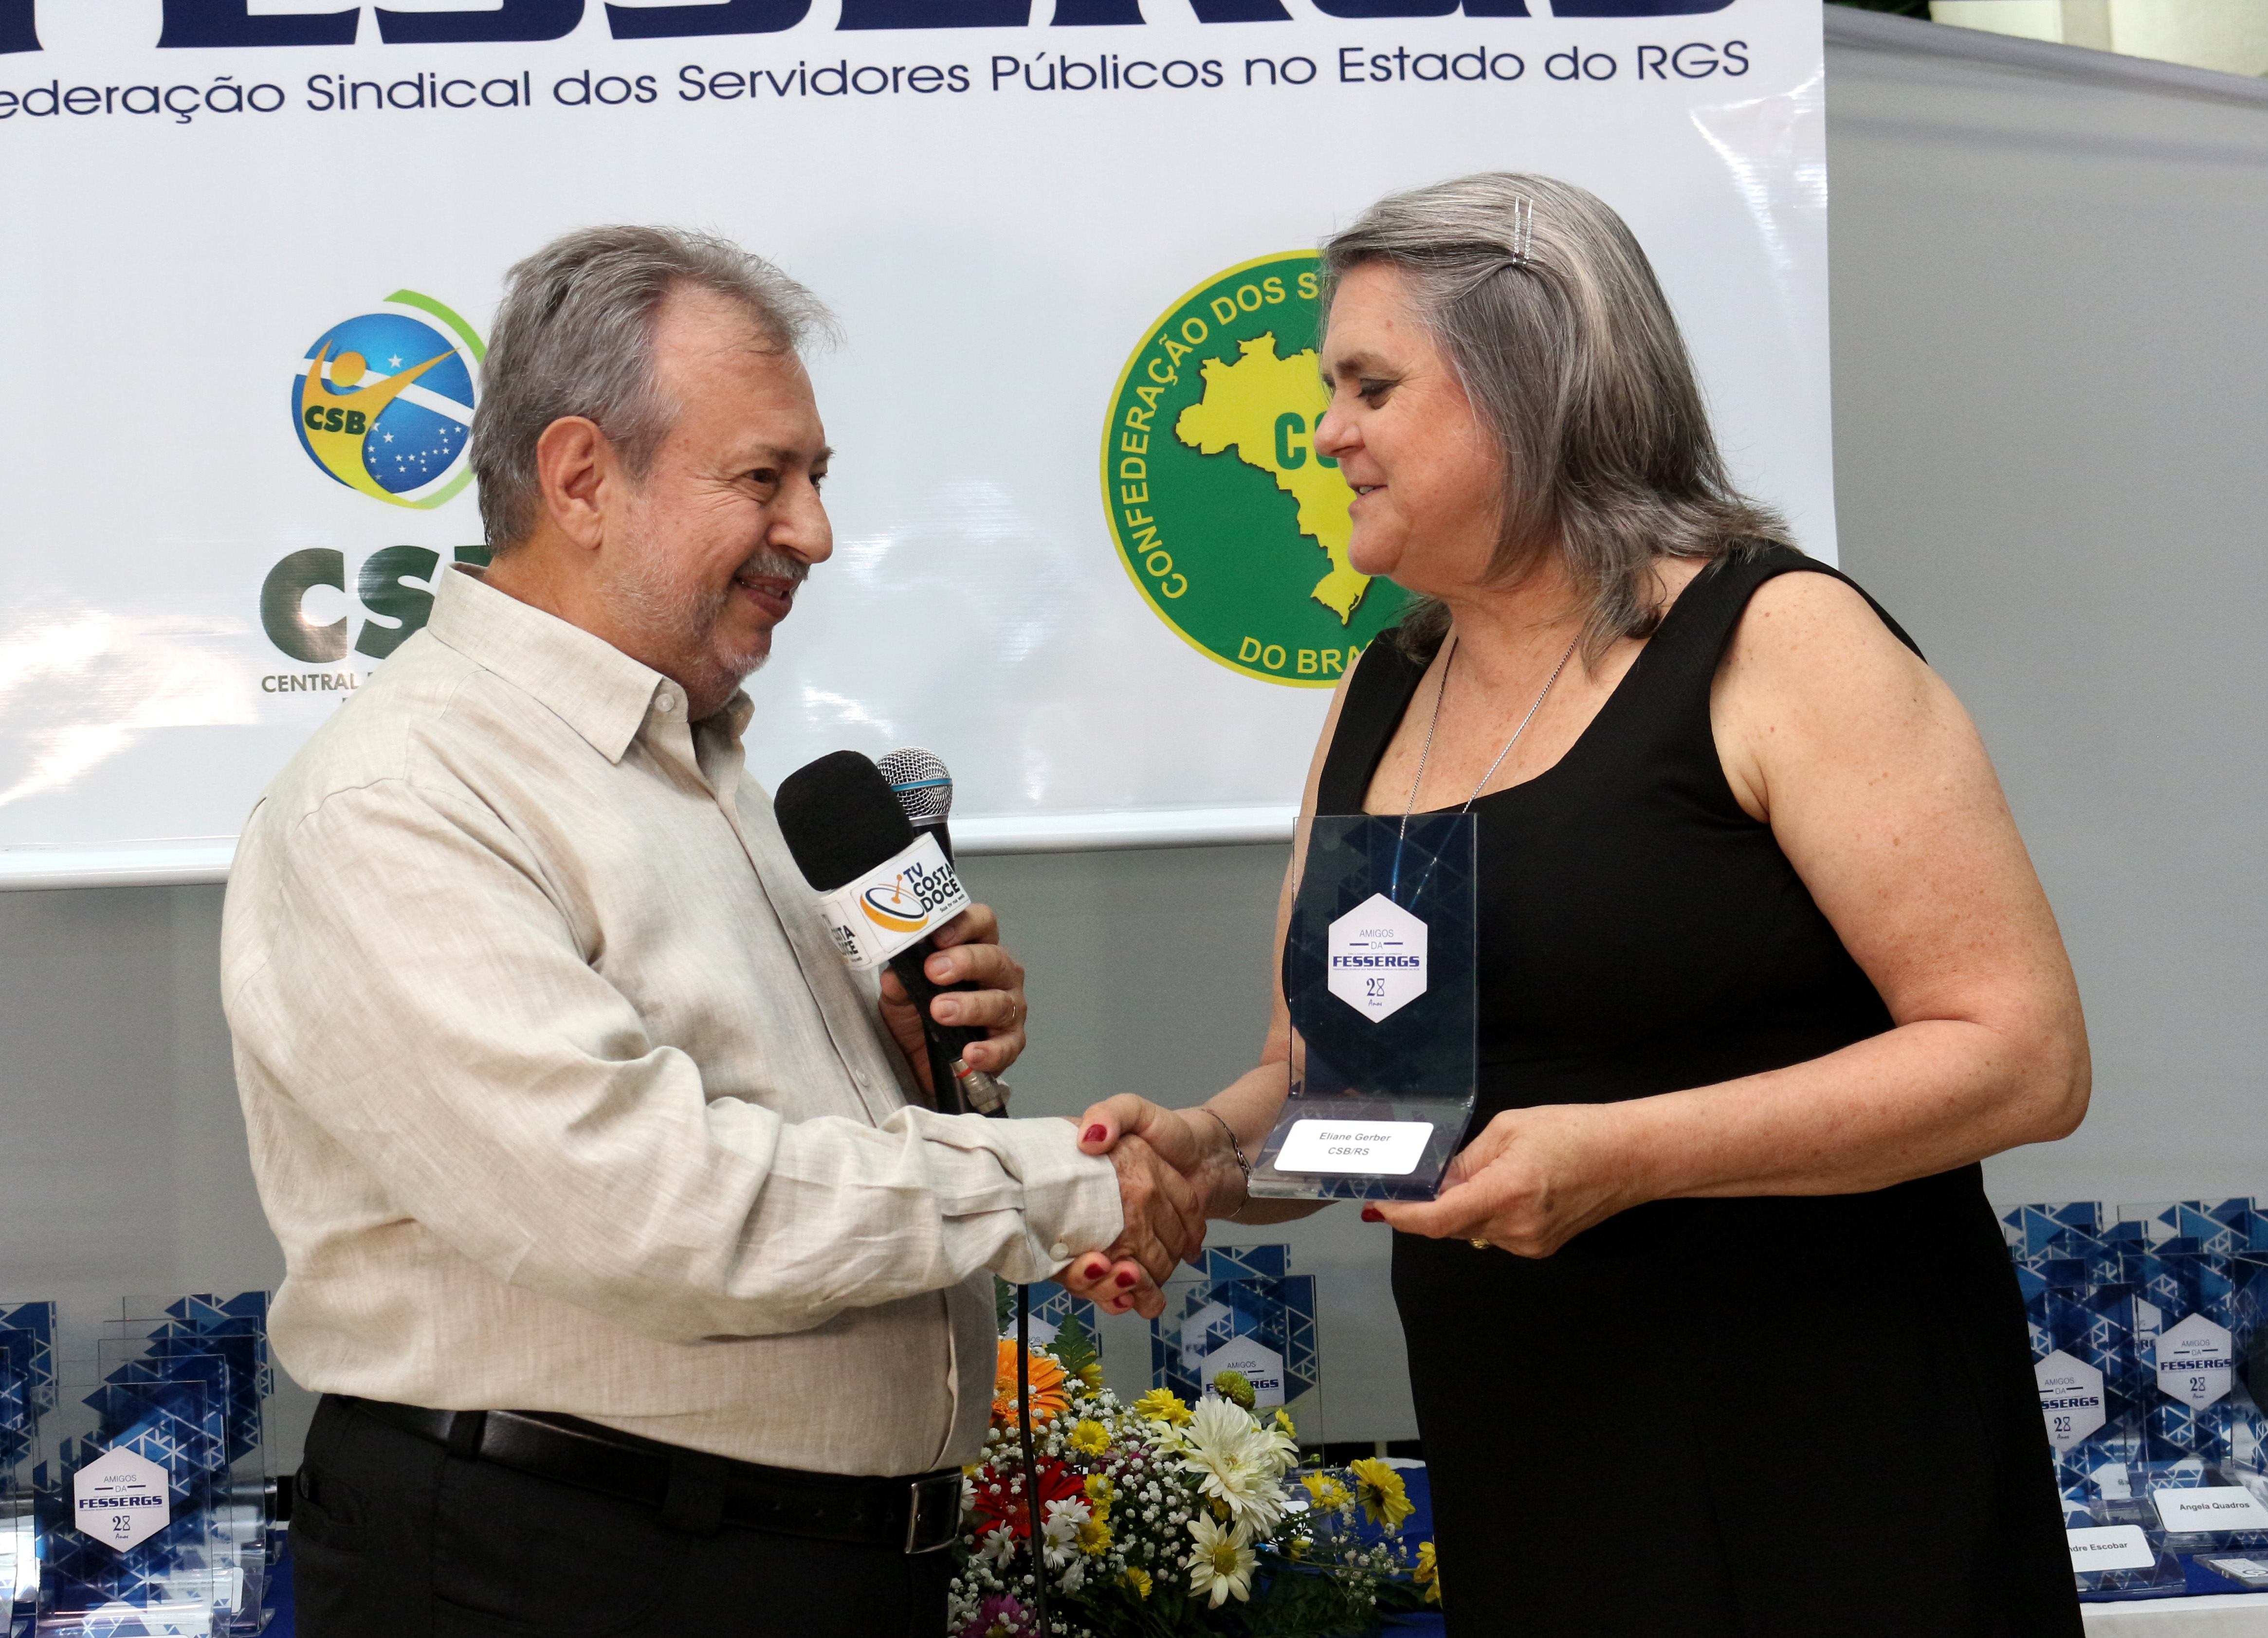 CSB é homenageada por Federação Sindical do Rio Grande do Sul